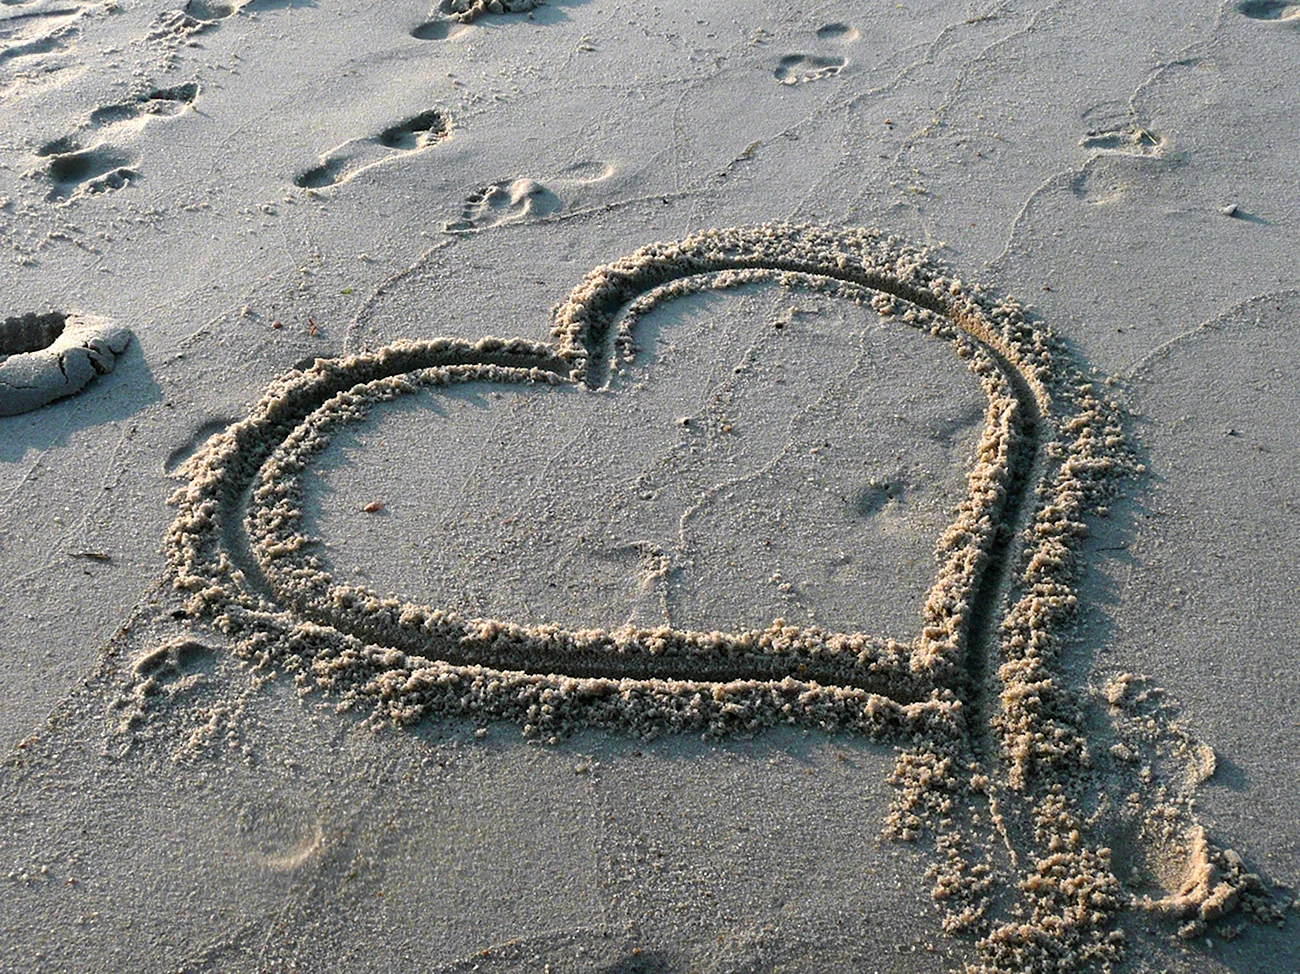 Сердце на песке у моря. Красивая картинка